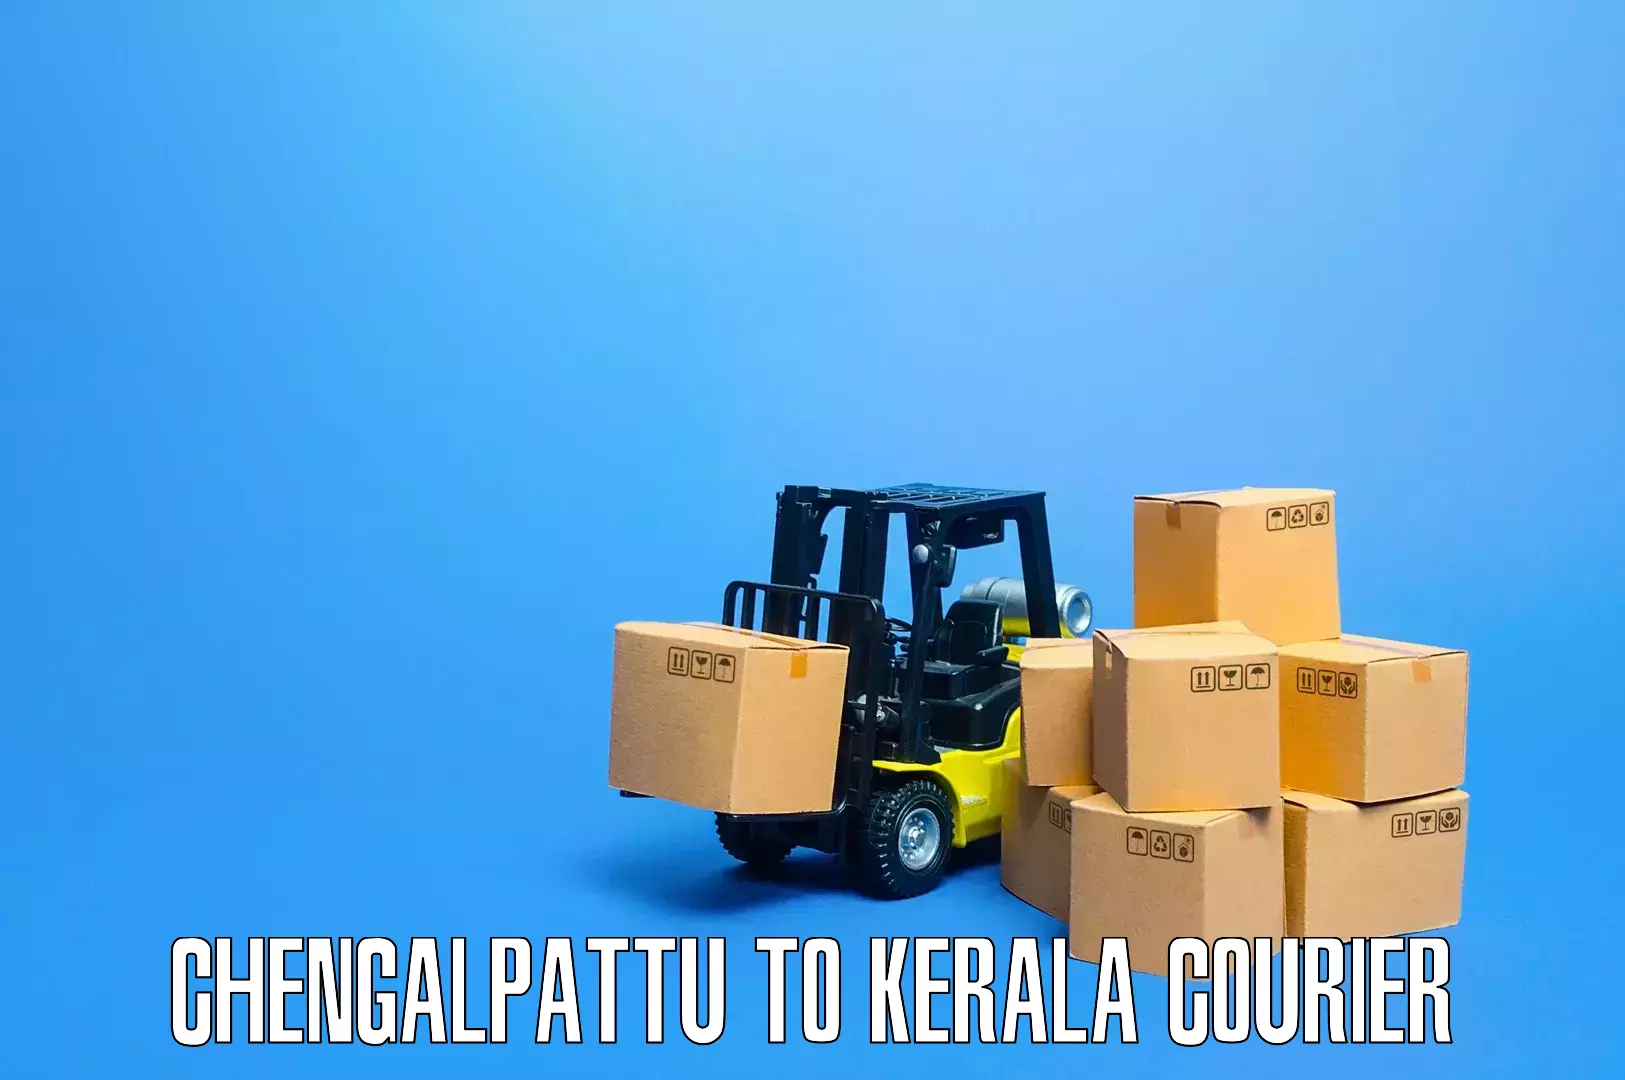 Quality moving company Chengalpattu to Kayamkulam